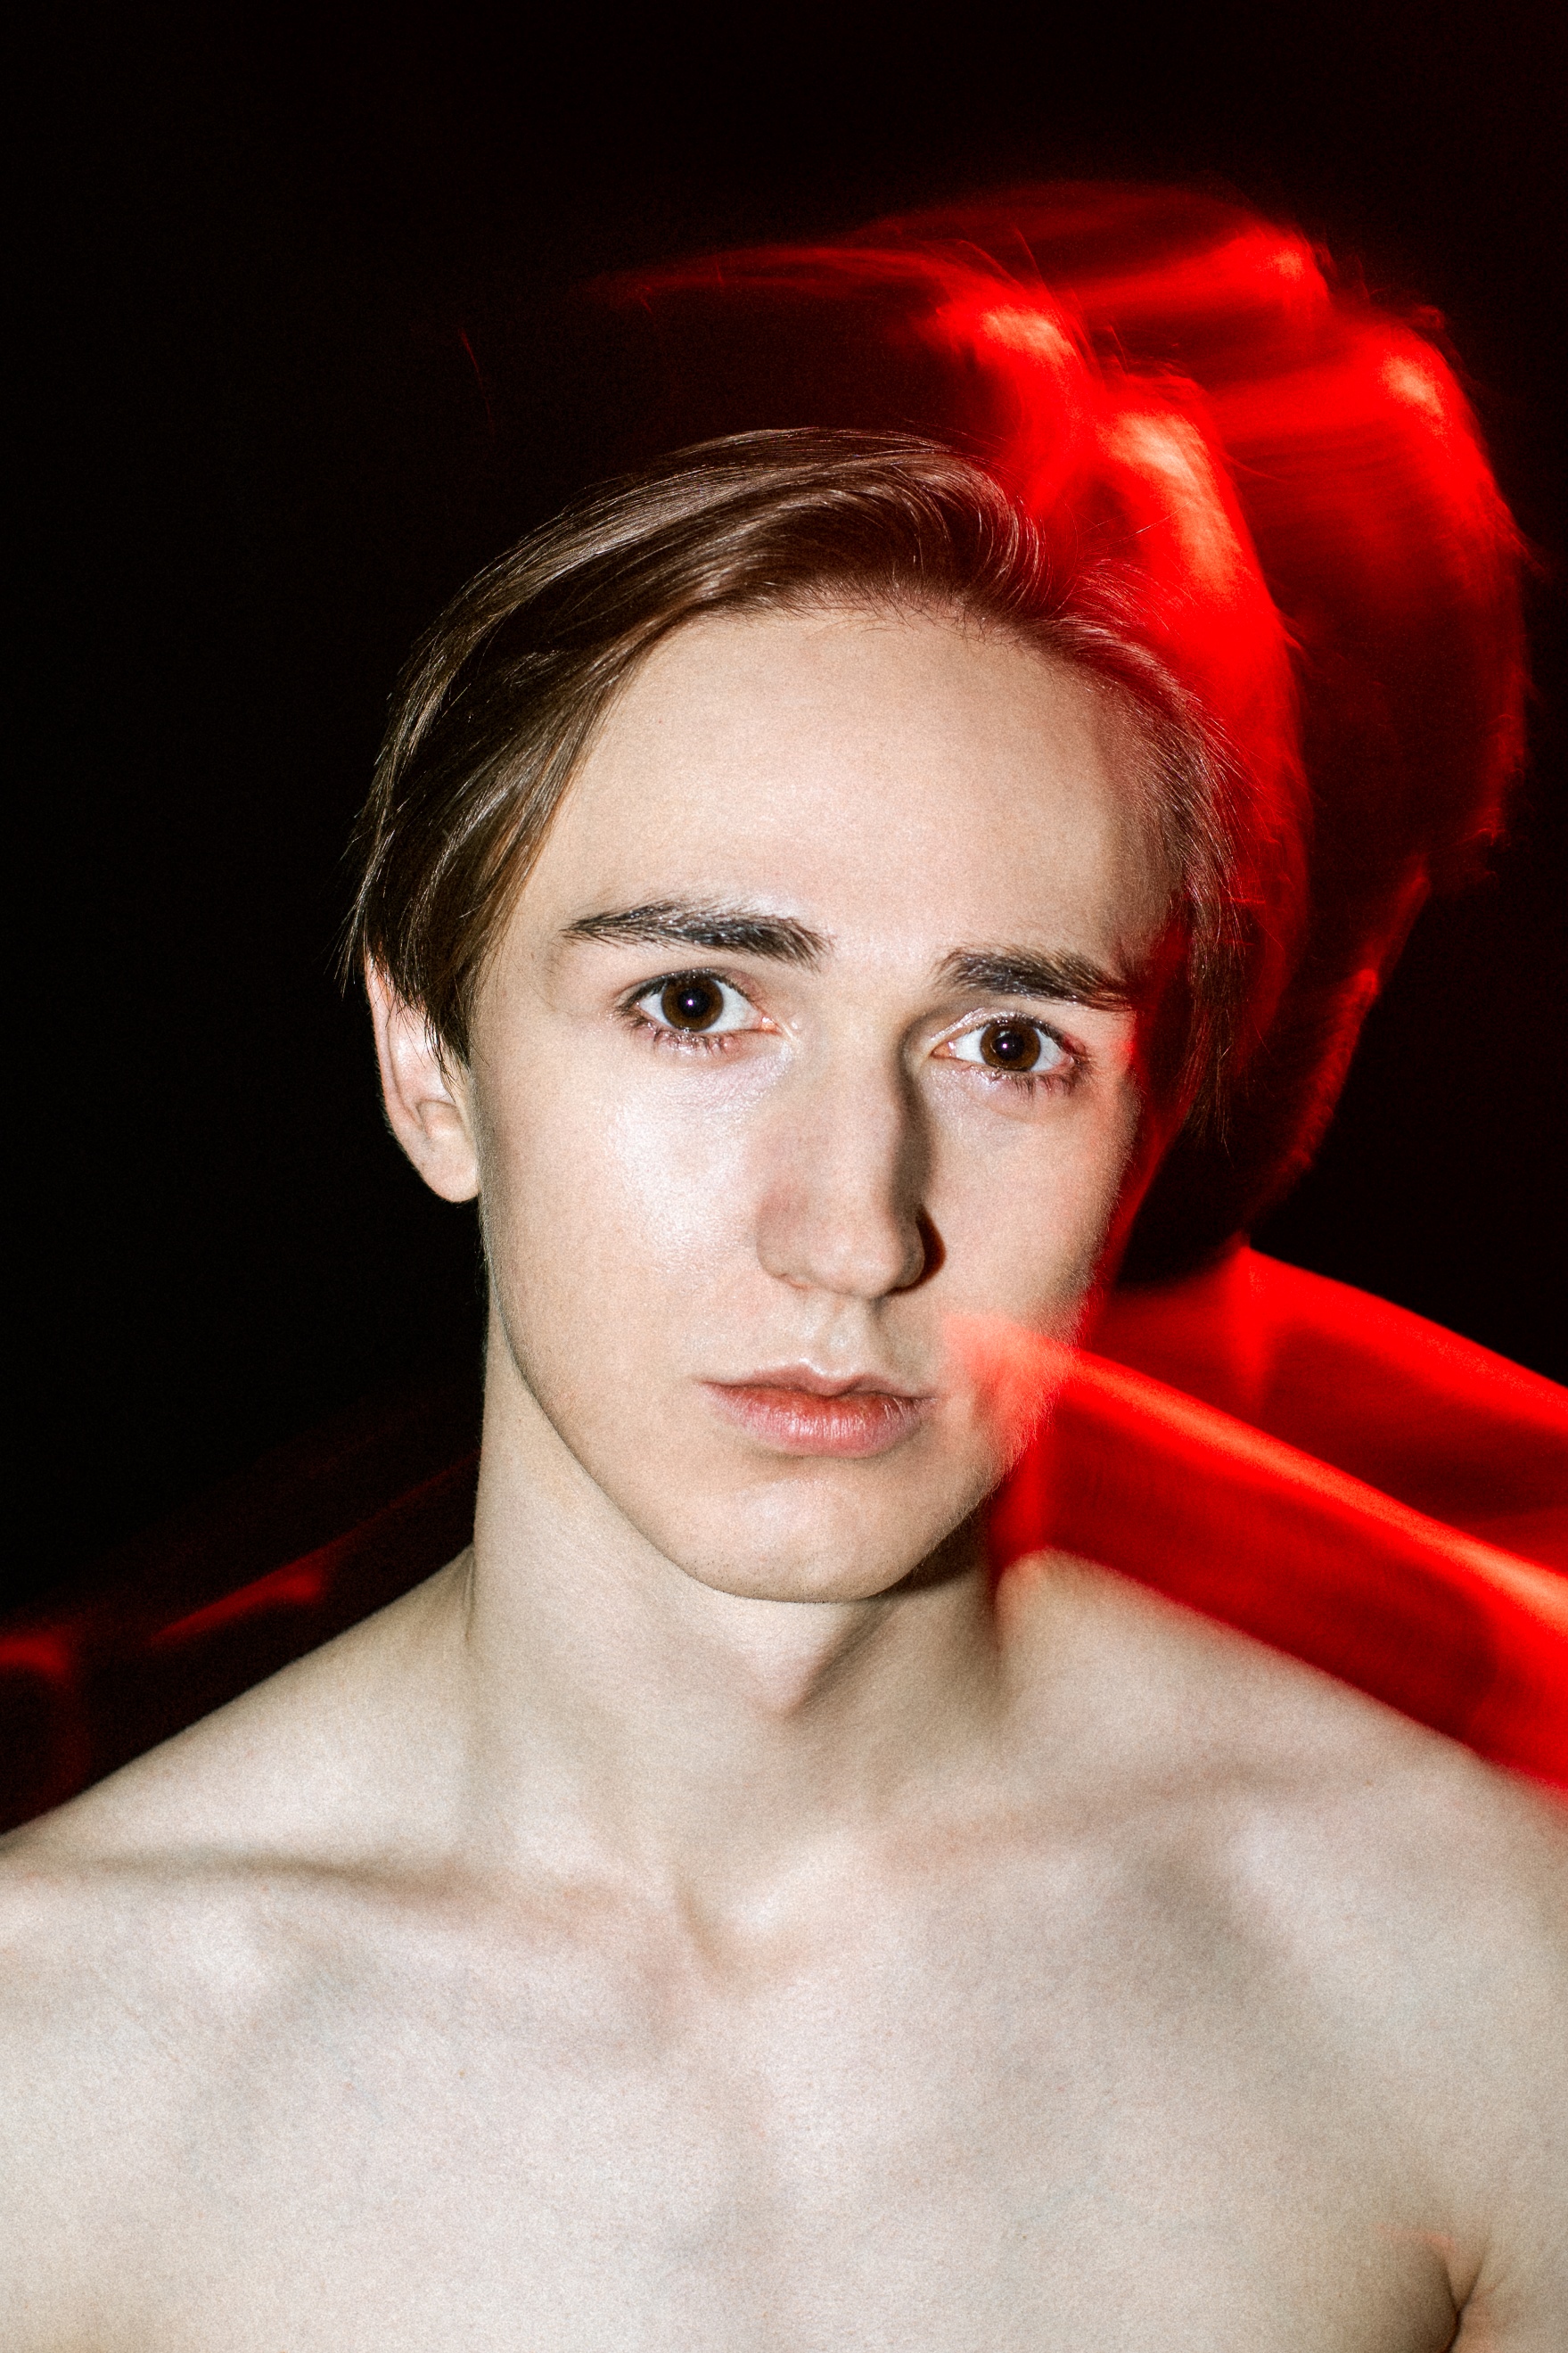 Portret młodego brązowookiego mężczyzny. Światło padające na tył głowy i nagie ramiona mężczyzny wyraźnie kontrastuje z czarnym tłem i tworzy intensywną czerwoną poświatę.